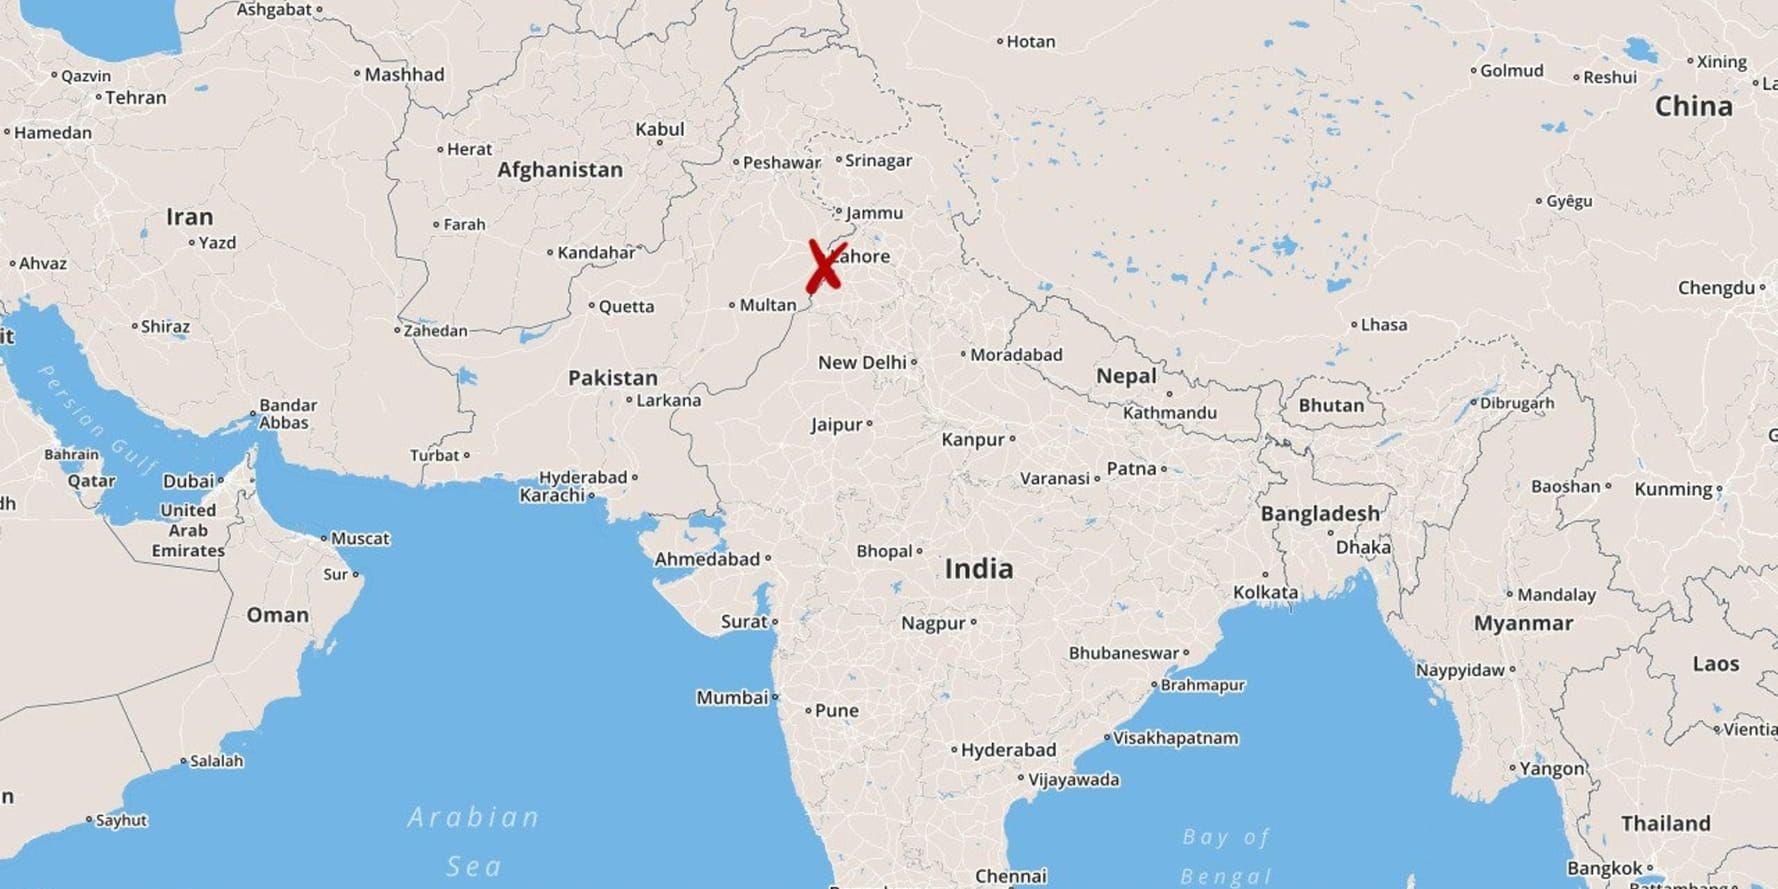 Den dödliga attacken skedde i distriktet Amritsar i den indiska delstaten Punjab.